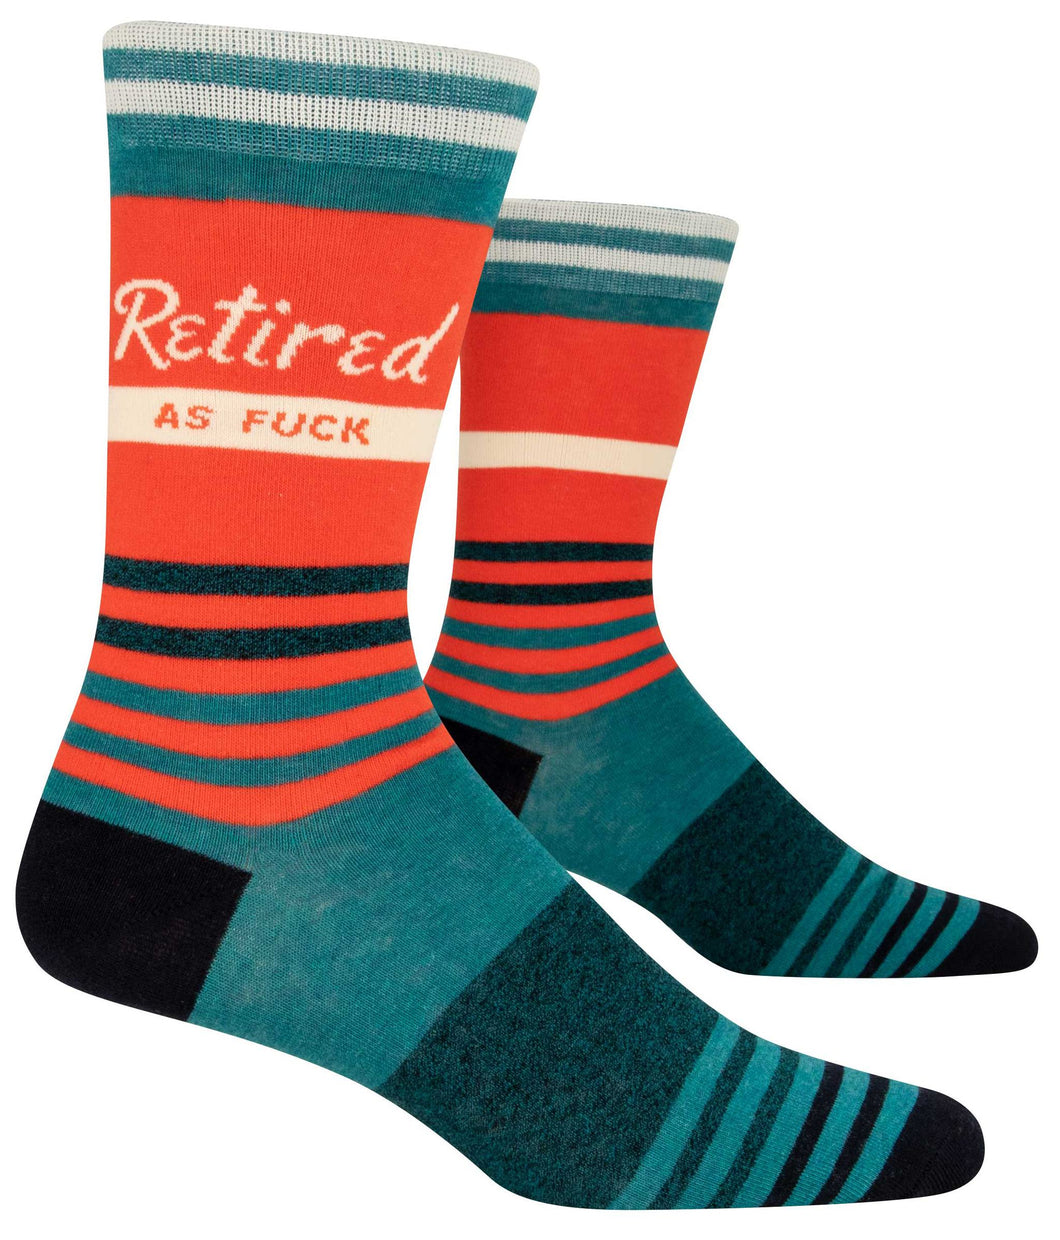 Retired As Fxck Men's Socks